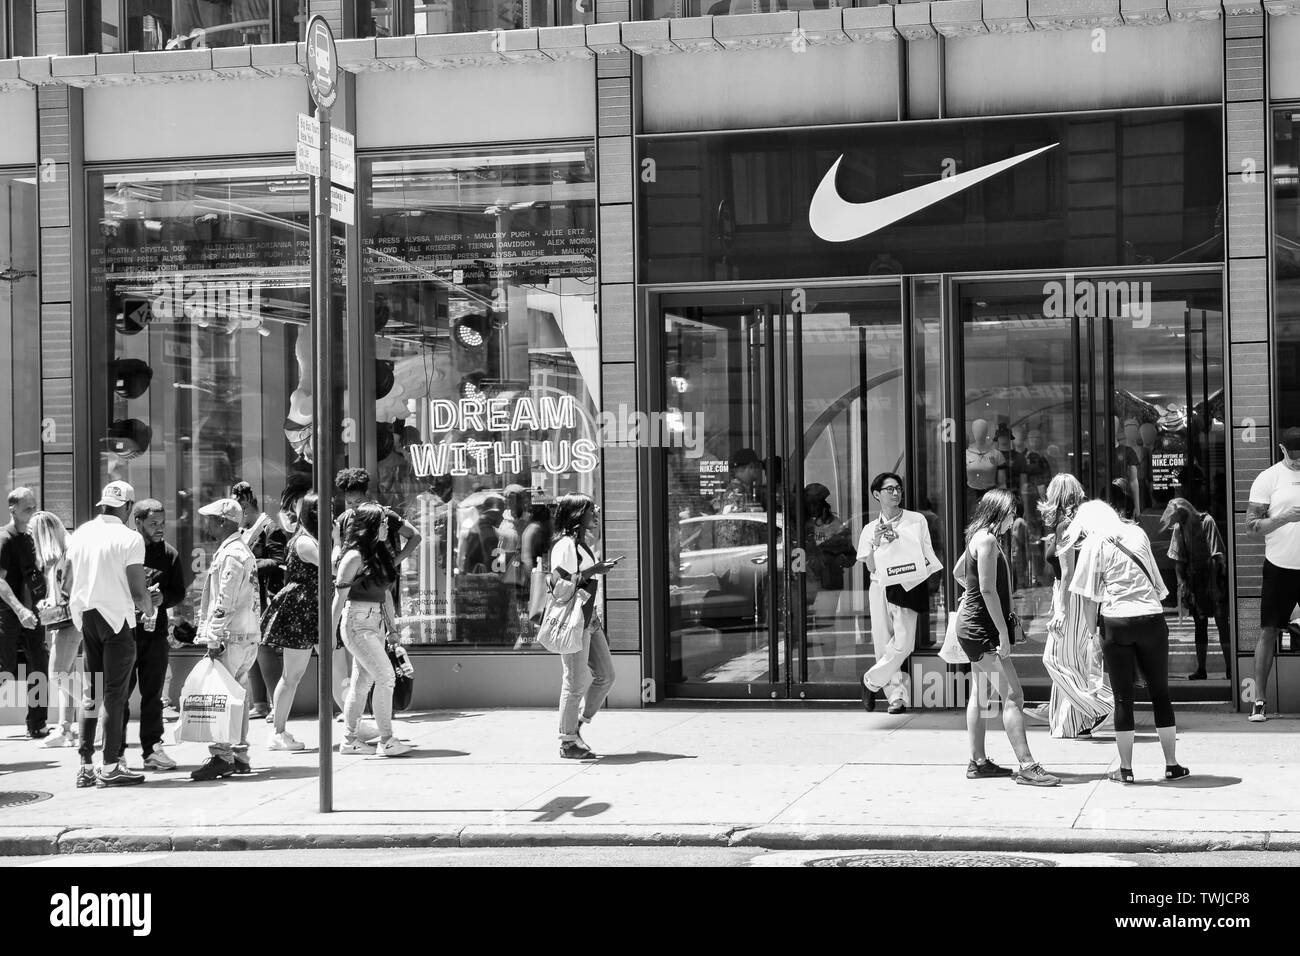 Nike store entrance Banque d'images noir et blanc - Alamy